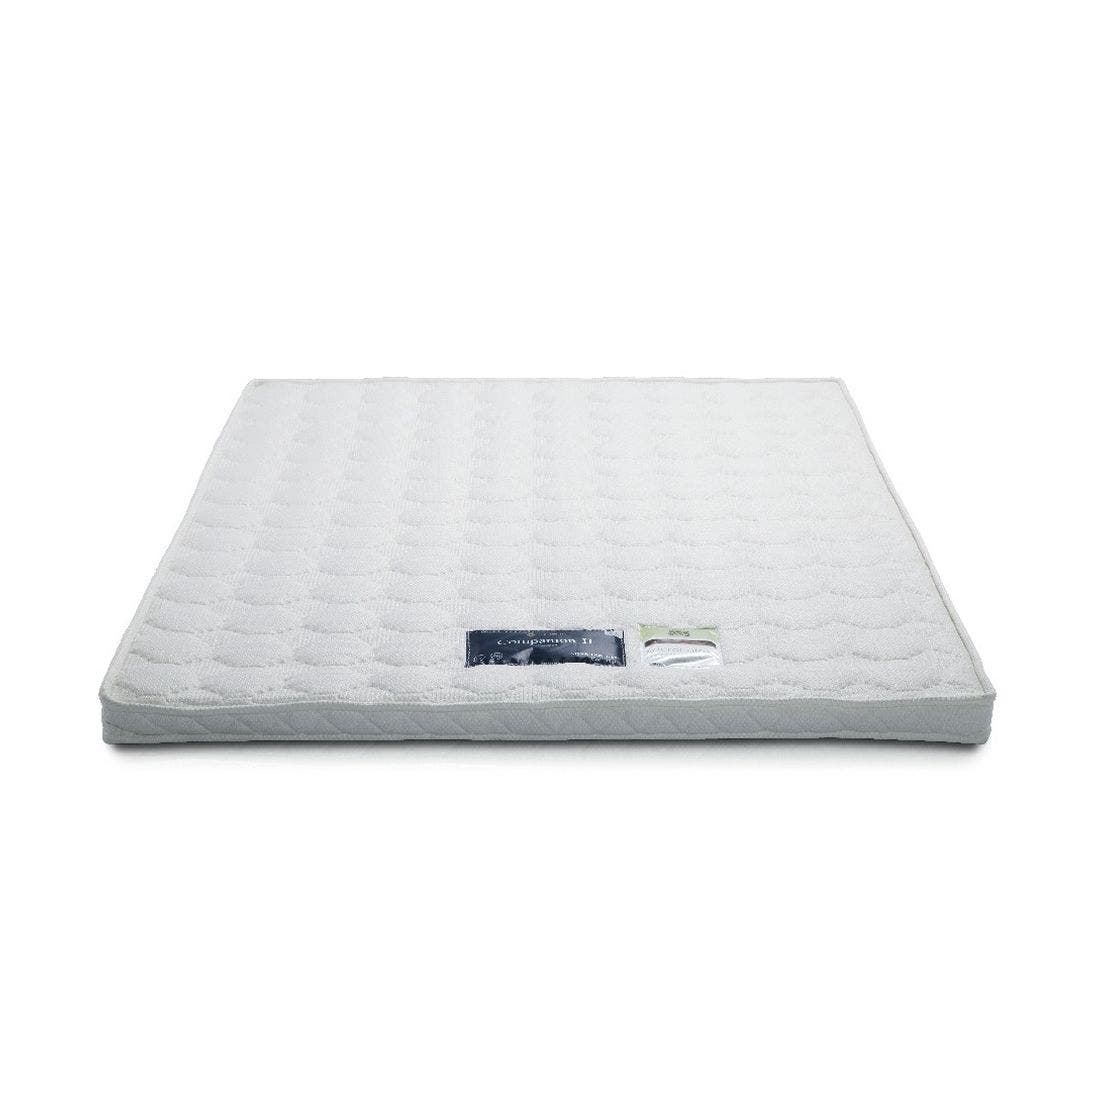 39005025-mattress-bedding-mattress-pads-protectors-mattress-pads-toppers-01